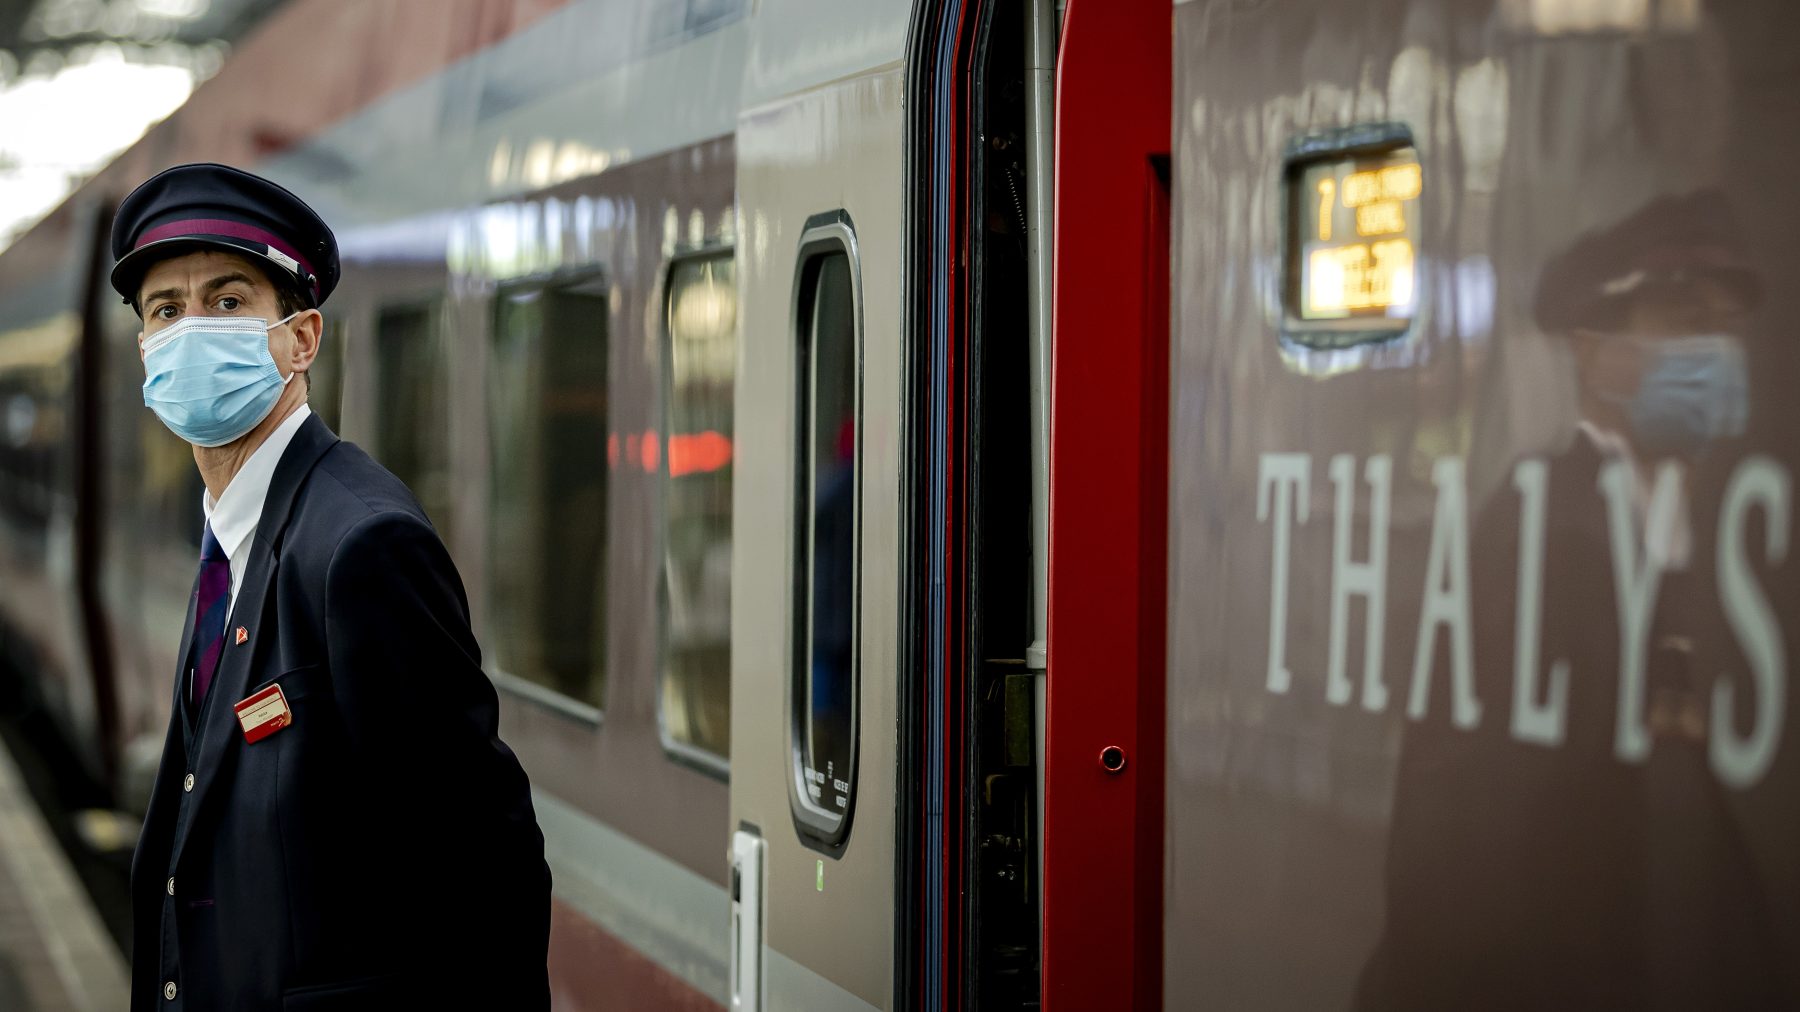 Passagiers zaten urenlang vast in snikhete Thalys: 'Het is hier 45 graden'